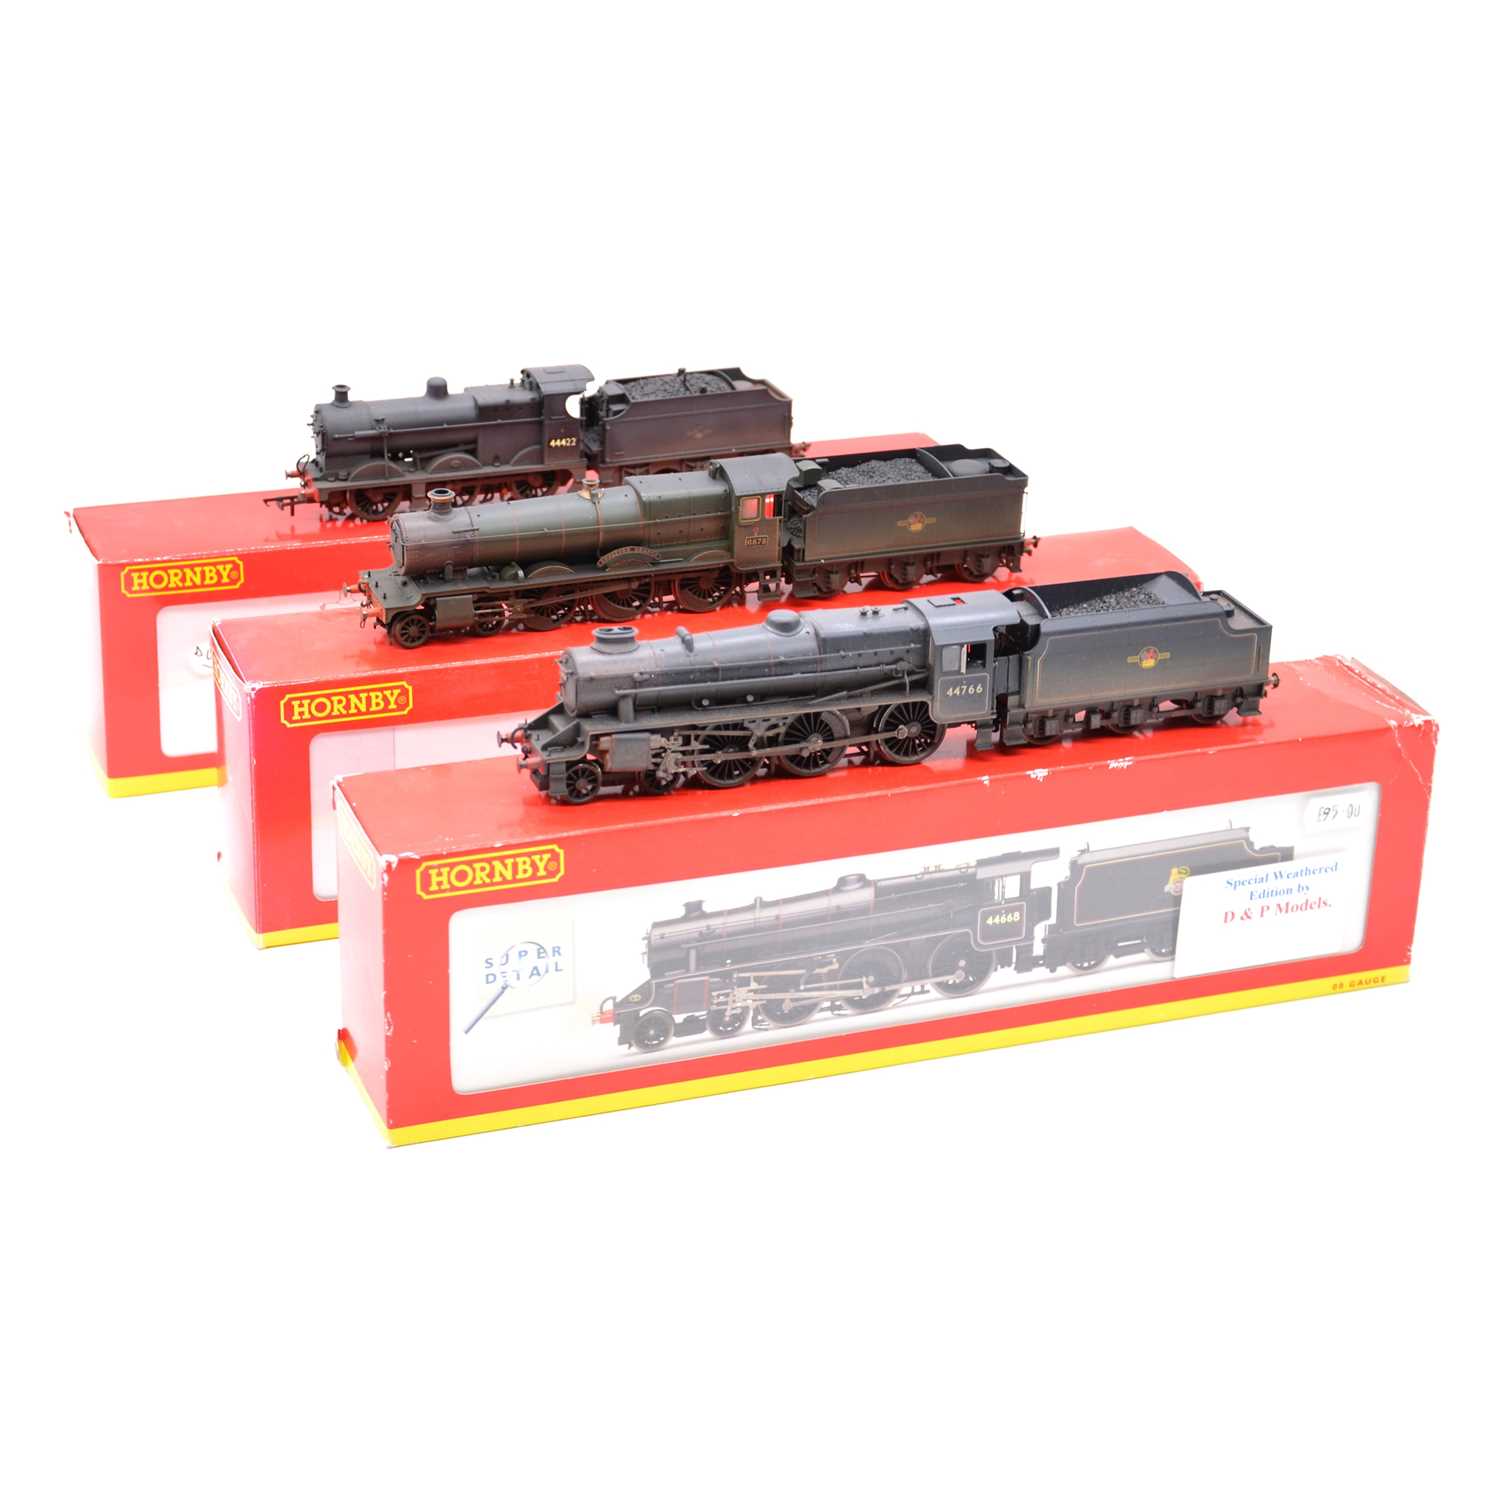 Lot 213 - Three Hornby OO gauge model railway steam locomotives with tenders